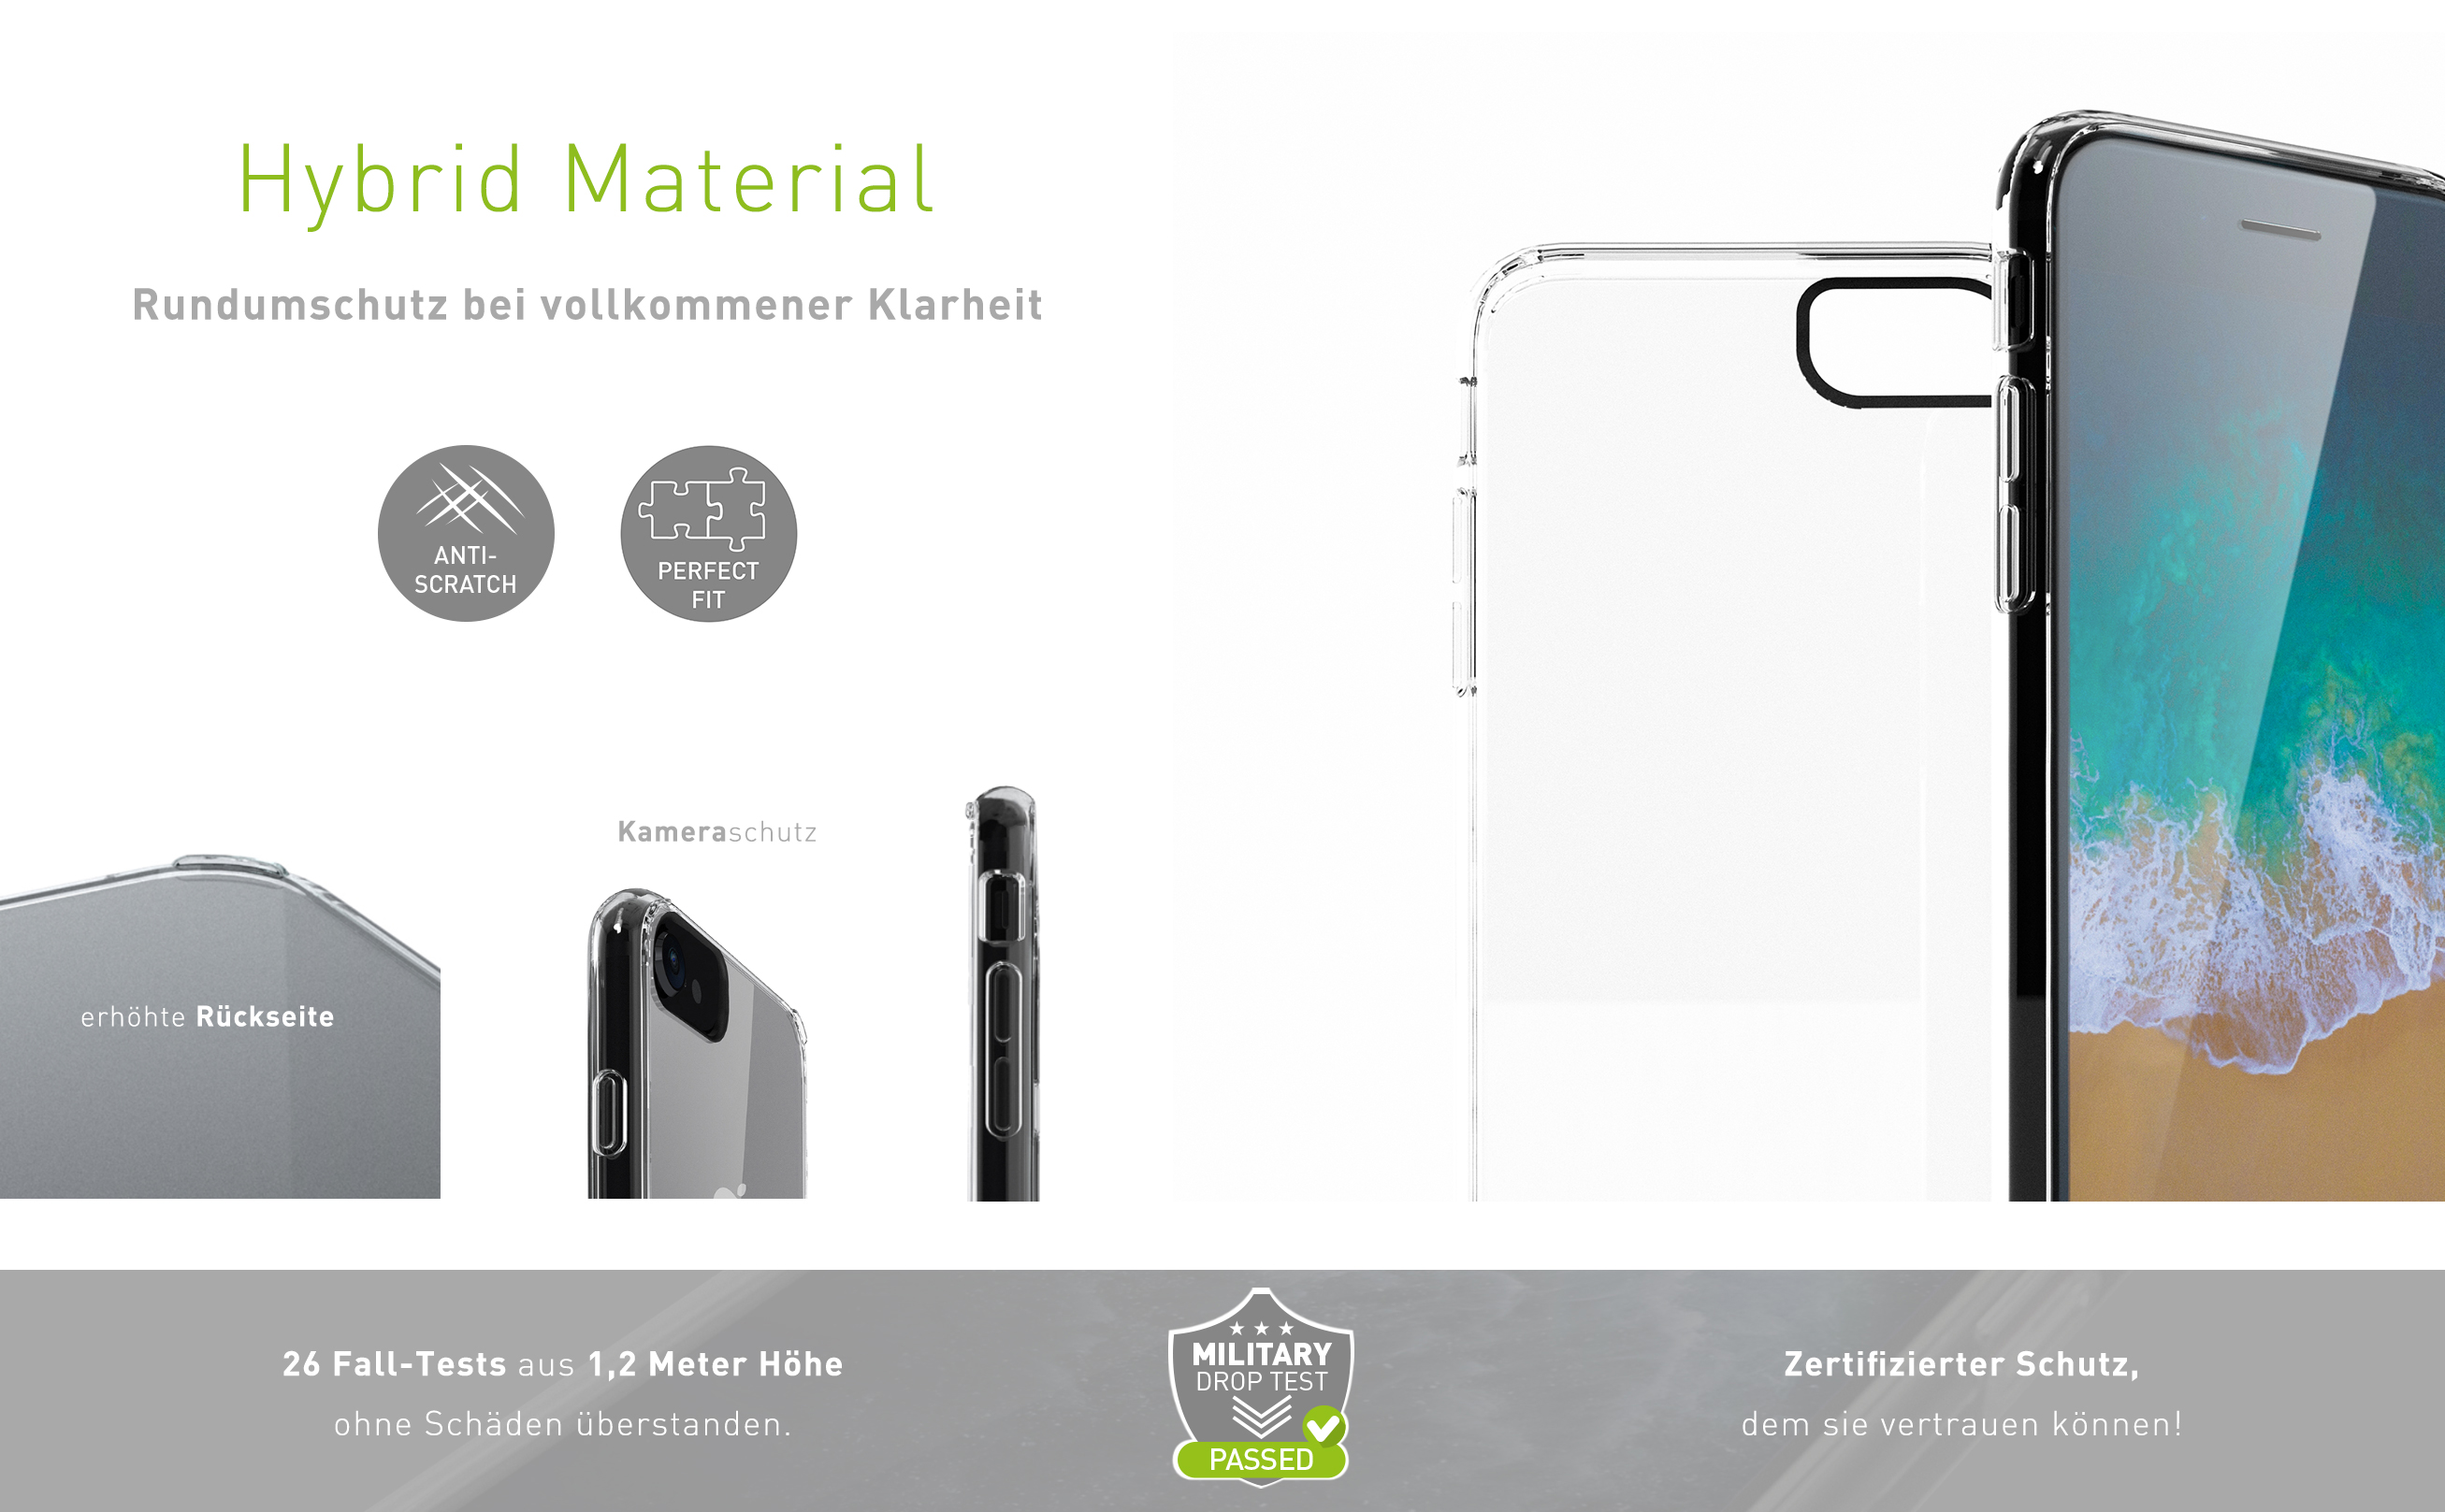 KMP Schutzhülle Backcover, Plus, iPhone Apple, transparent 7 7 für Plus Transparent, iPhone